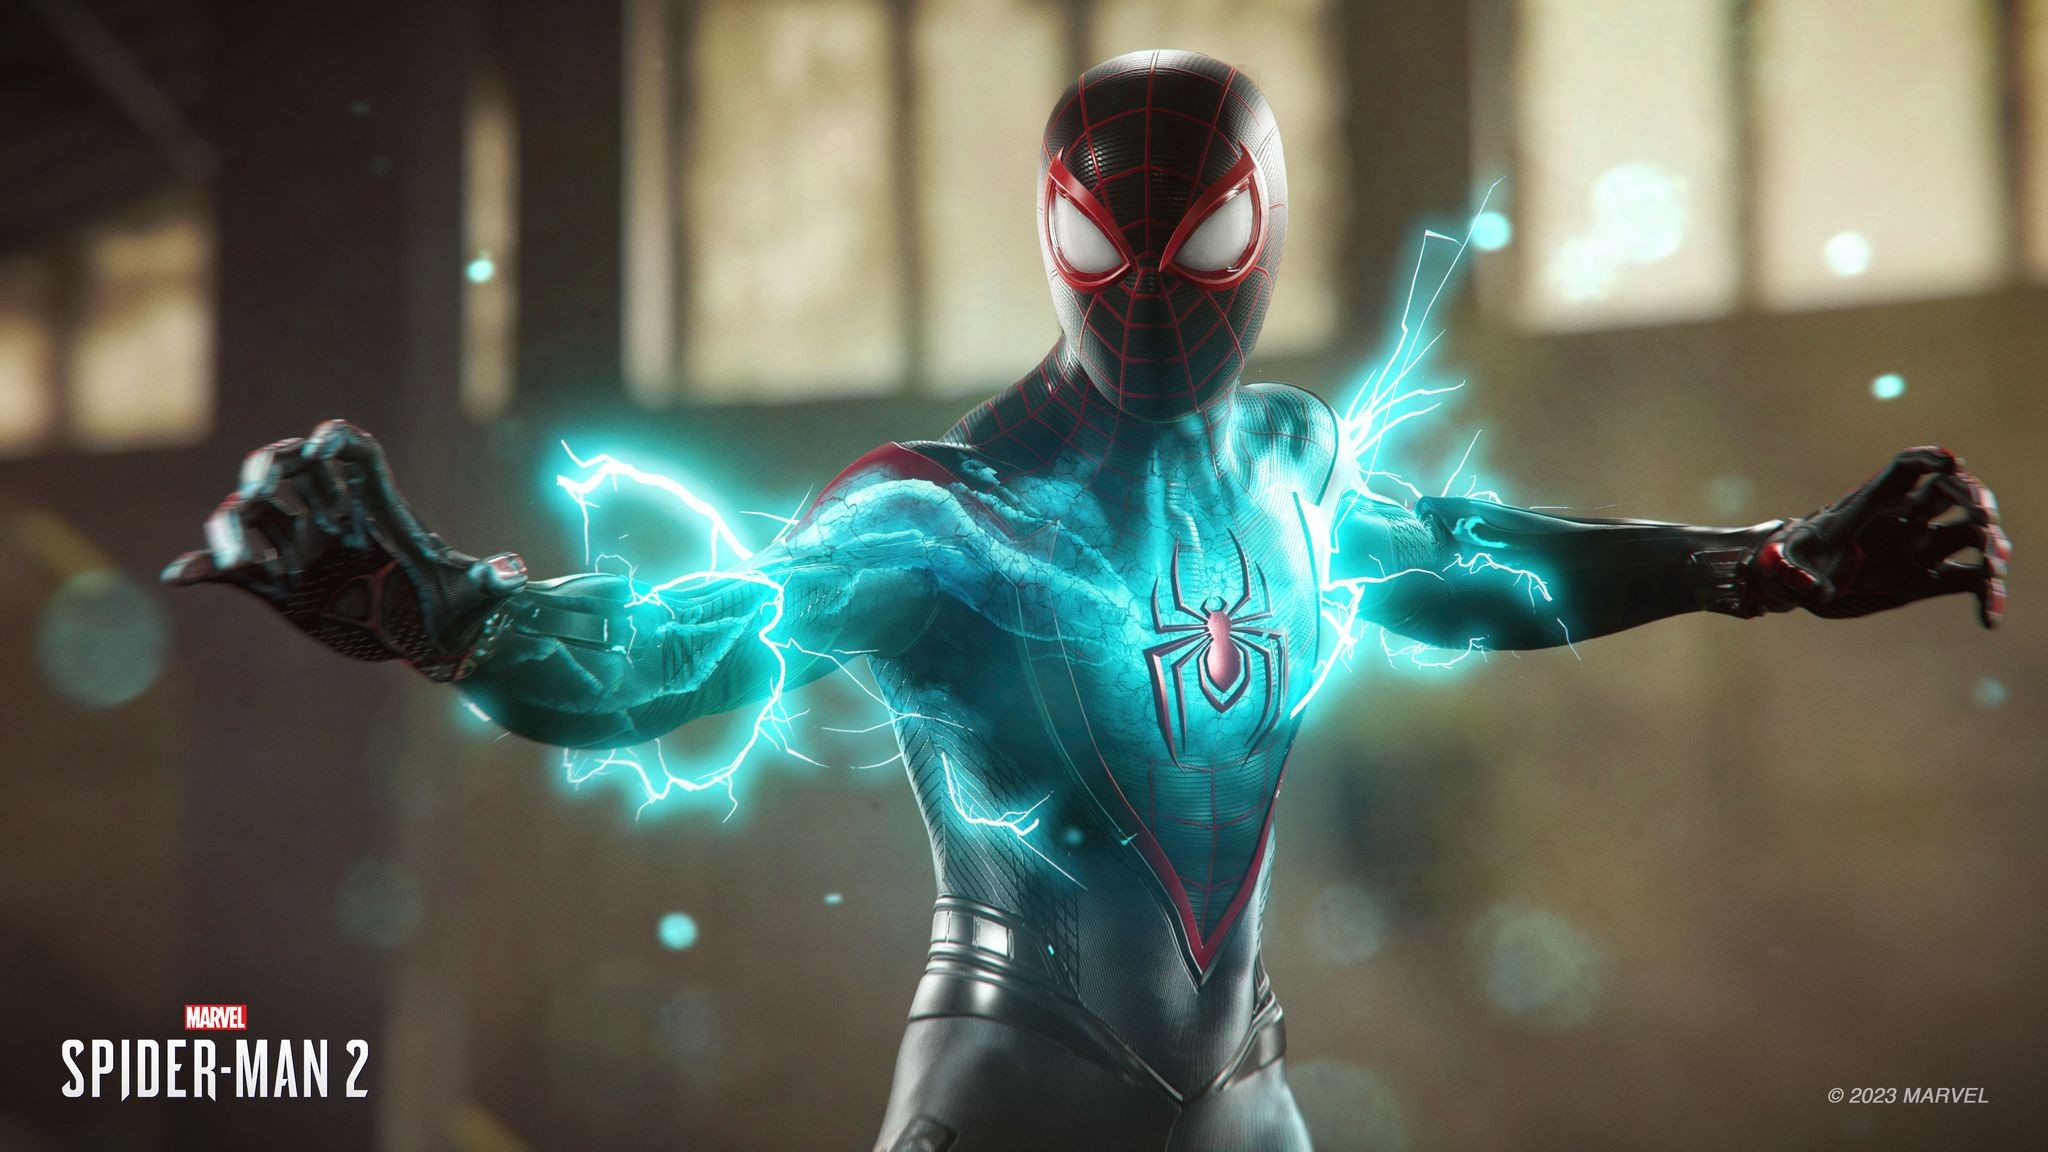 Marvel's Spider-Man 2 Collectors Edition + Preorder Bonus